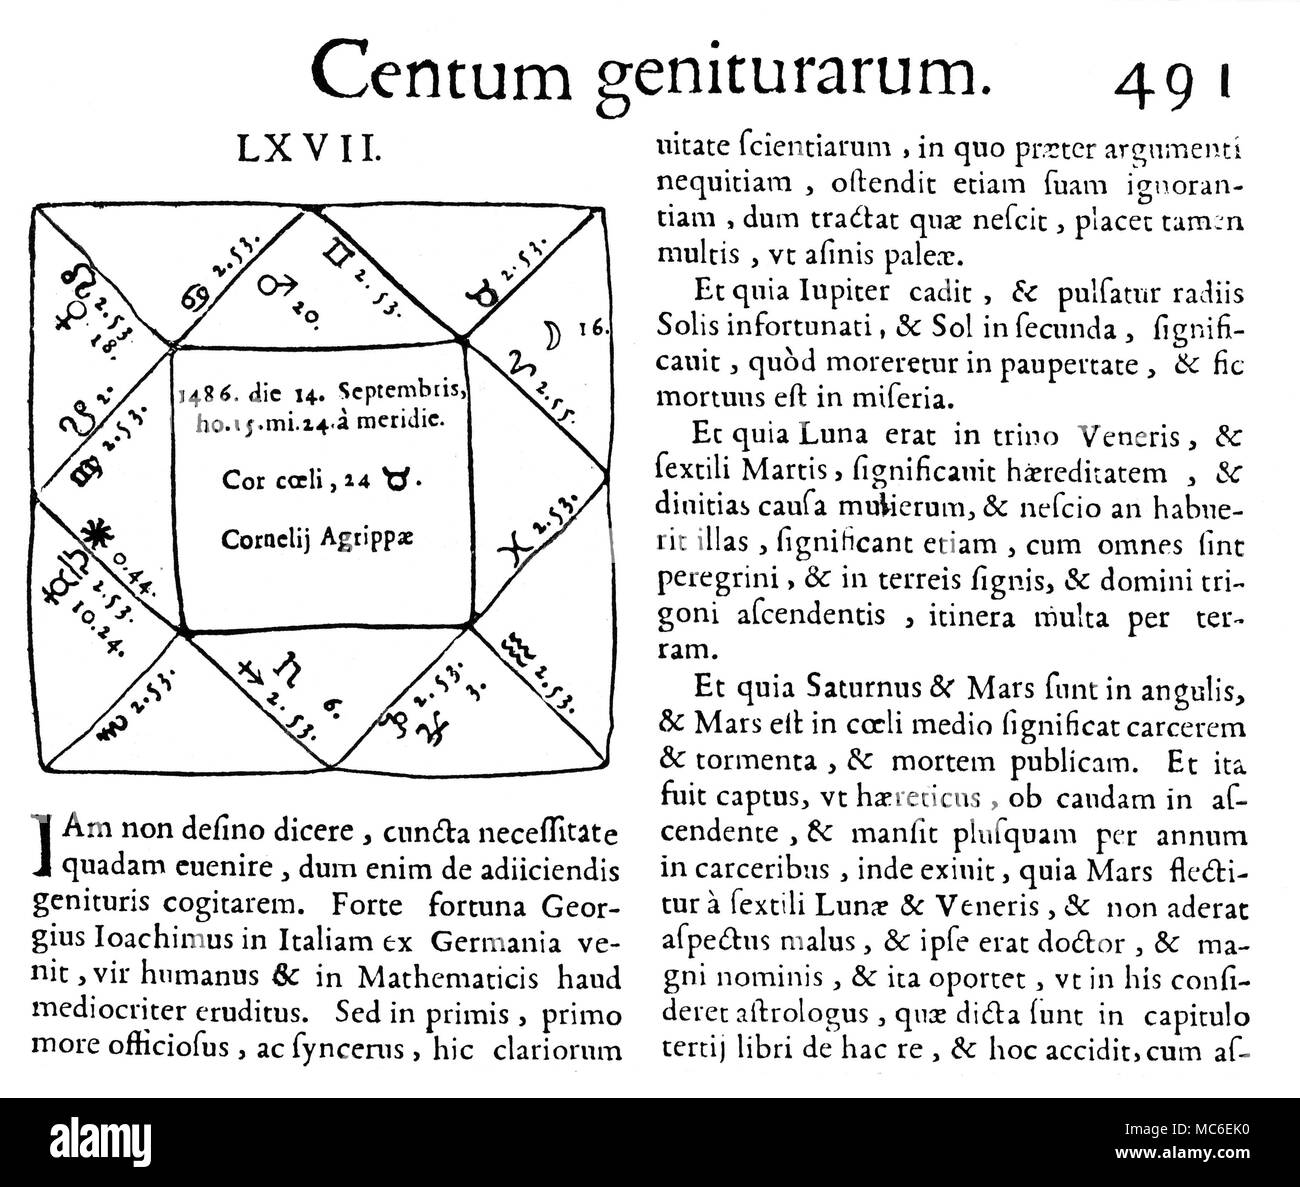 Astrologia - oroscopi oroscopo della strega, Cornelius Agrippa, che è nato il 14 settembre 1486. Da Hieronimus Cardanus, Operum tomus quintus, 1663 [De exemplo centum genituararum]. Foto Stock